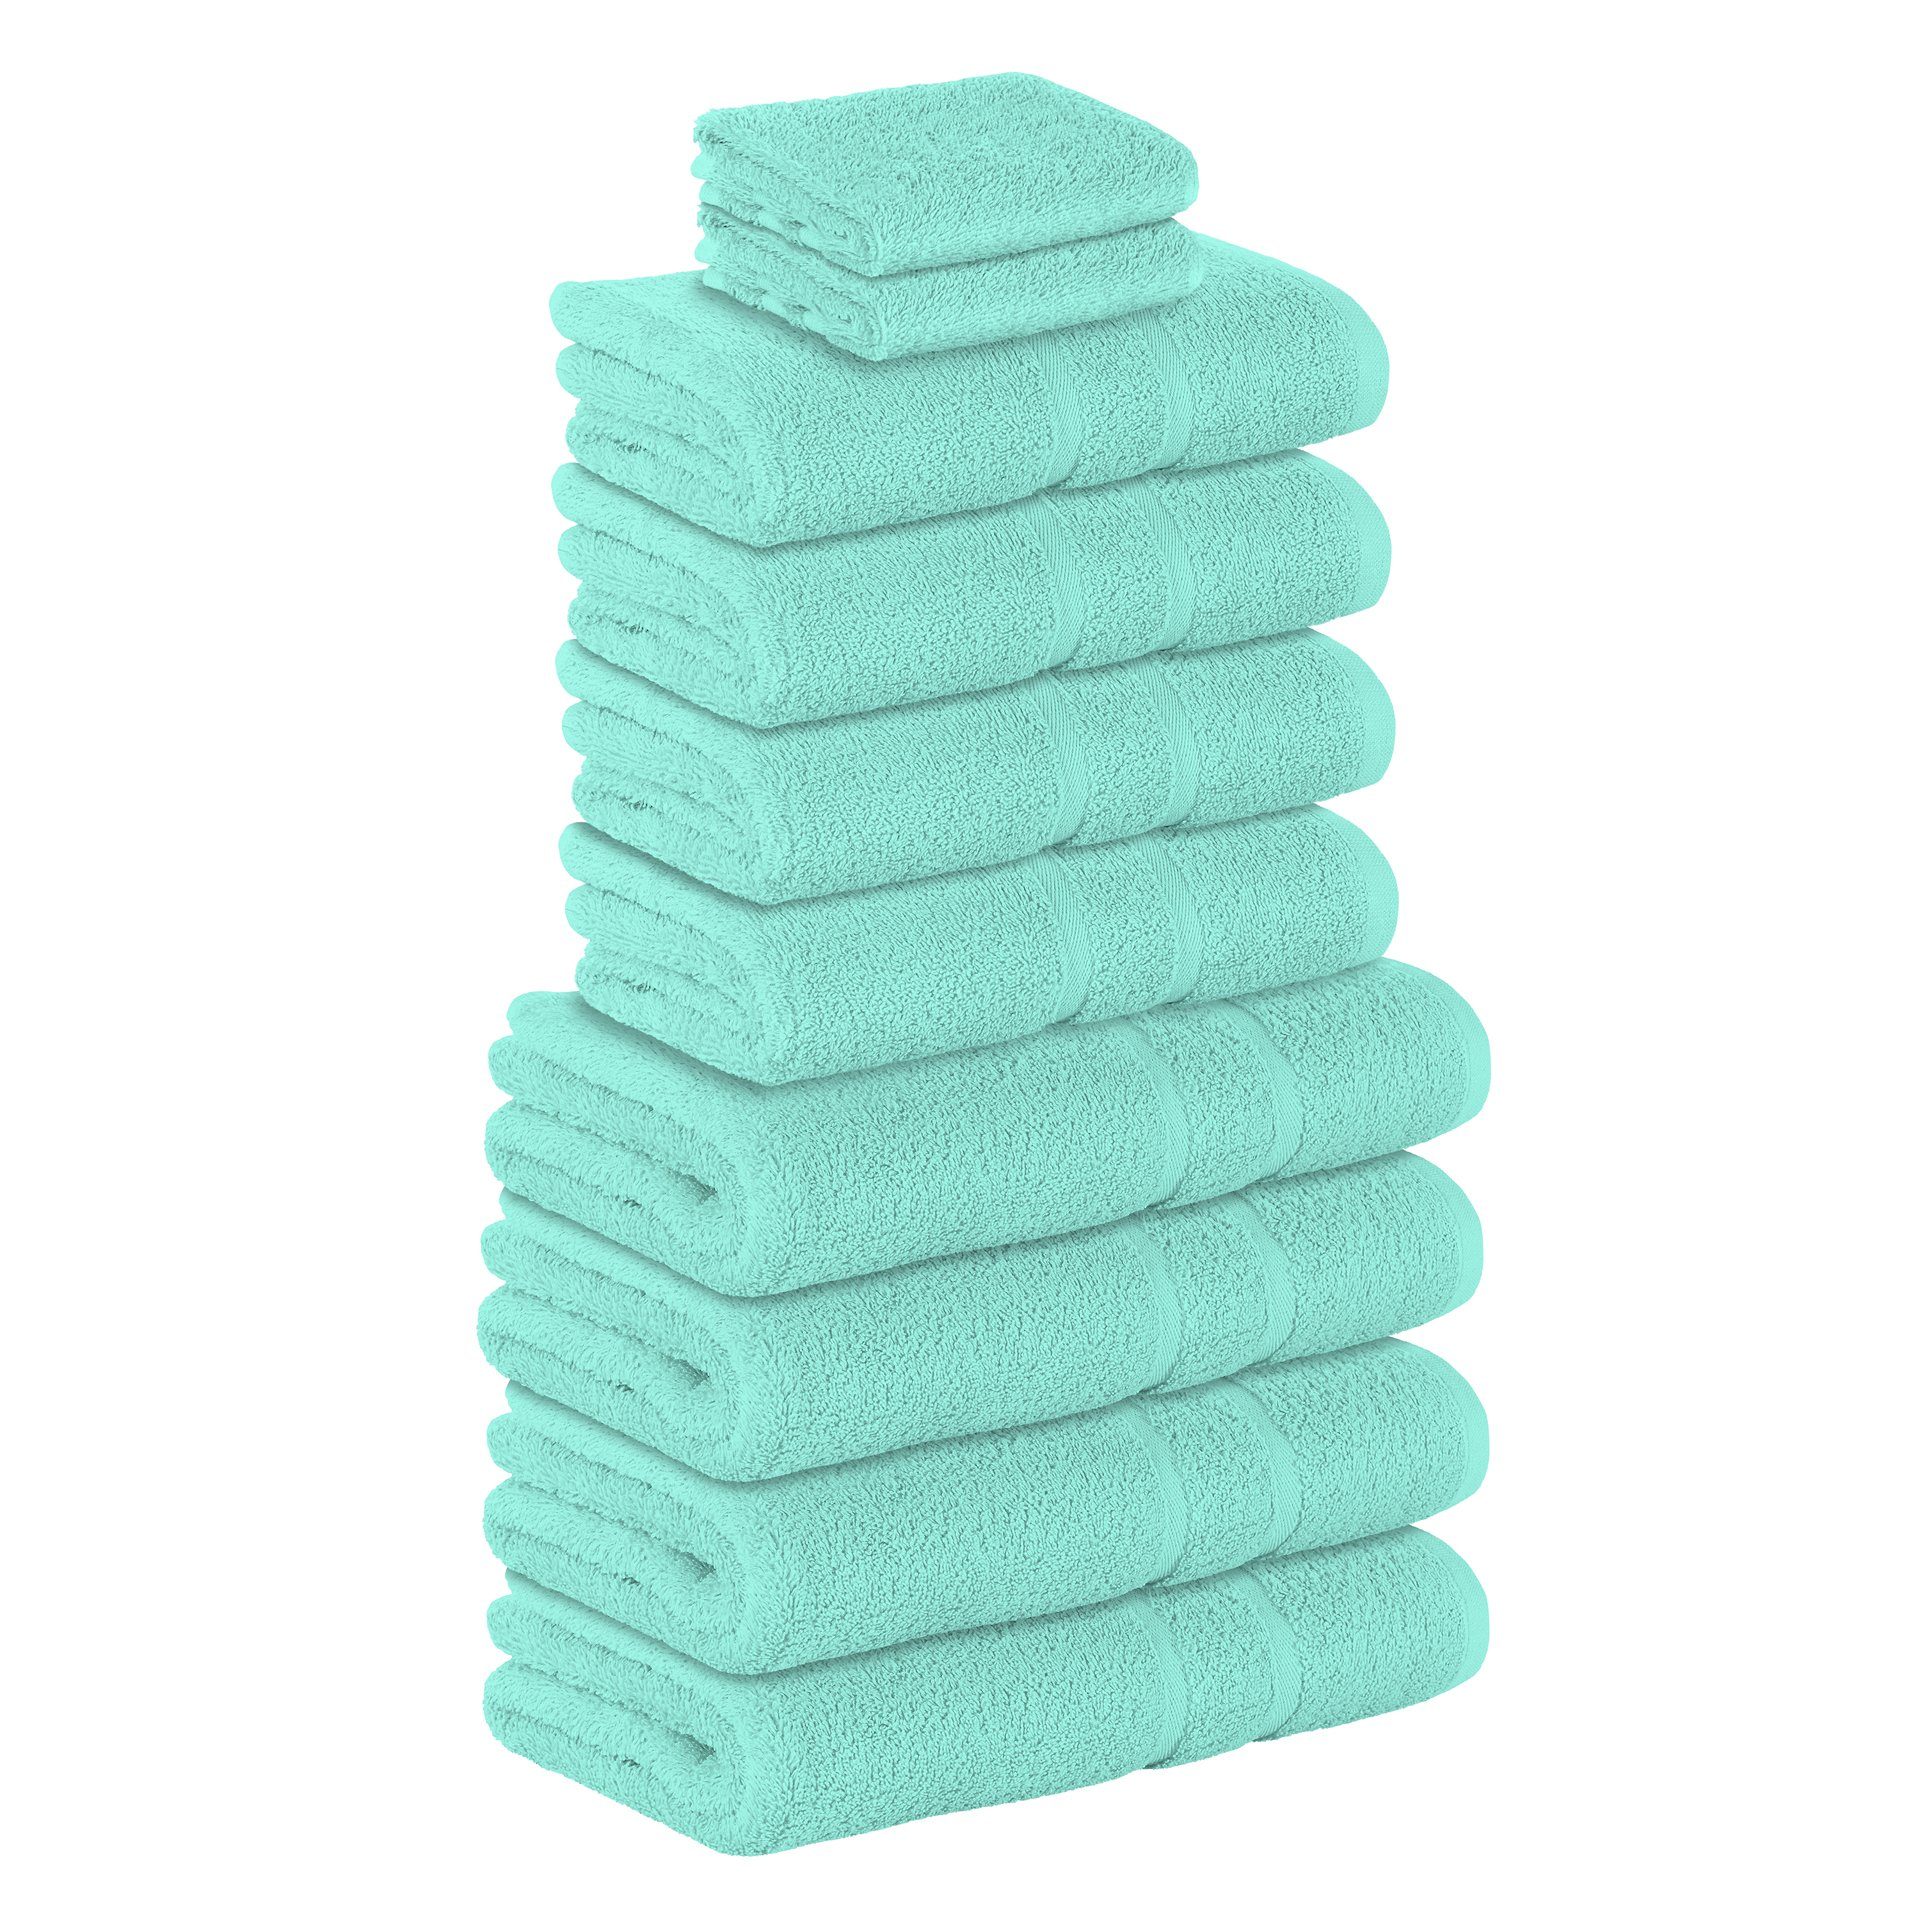 StickandShine Handtuch Set 2x Gästehandtuch 4x Handtücher 4x Duschtücher als SET in verschiedenen Farben (10 Teilig) 100% Baumwolle 500 GSM Frottee 10er Handtuch Pack, (Spar-set), 100% Baumwolle 500 GSM Mint | Handtuch-Sets